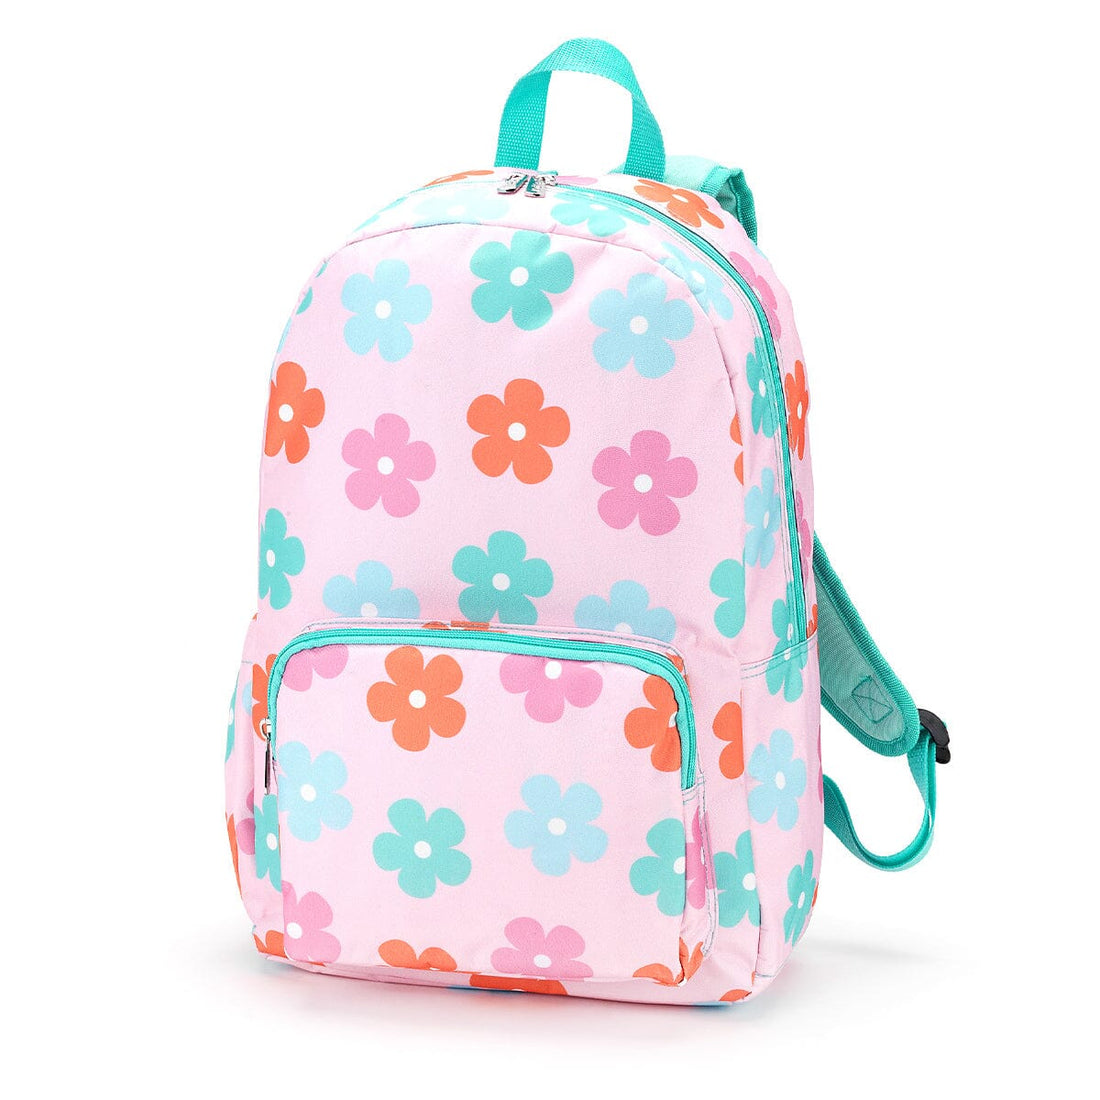 Daisy Backpack